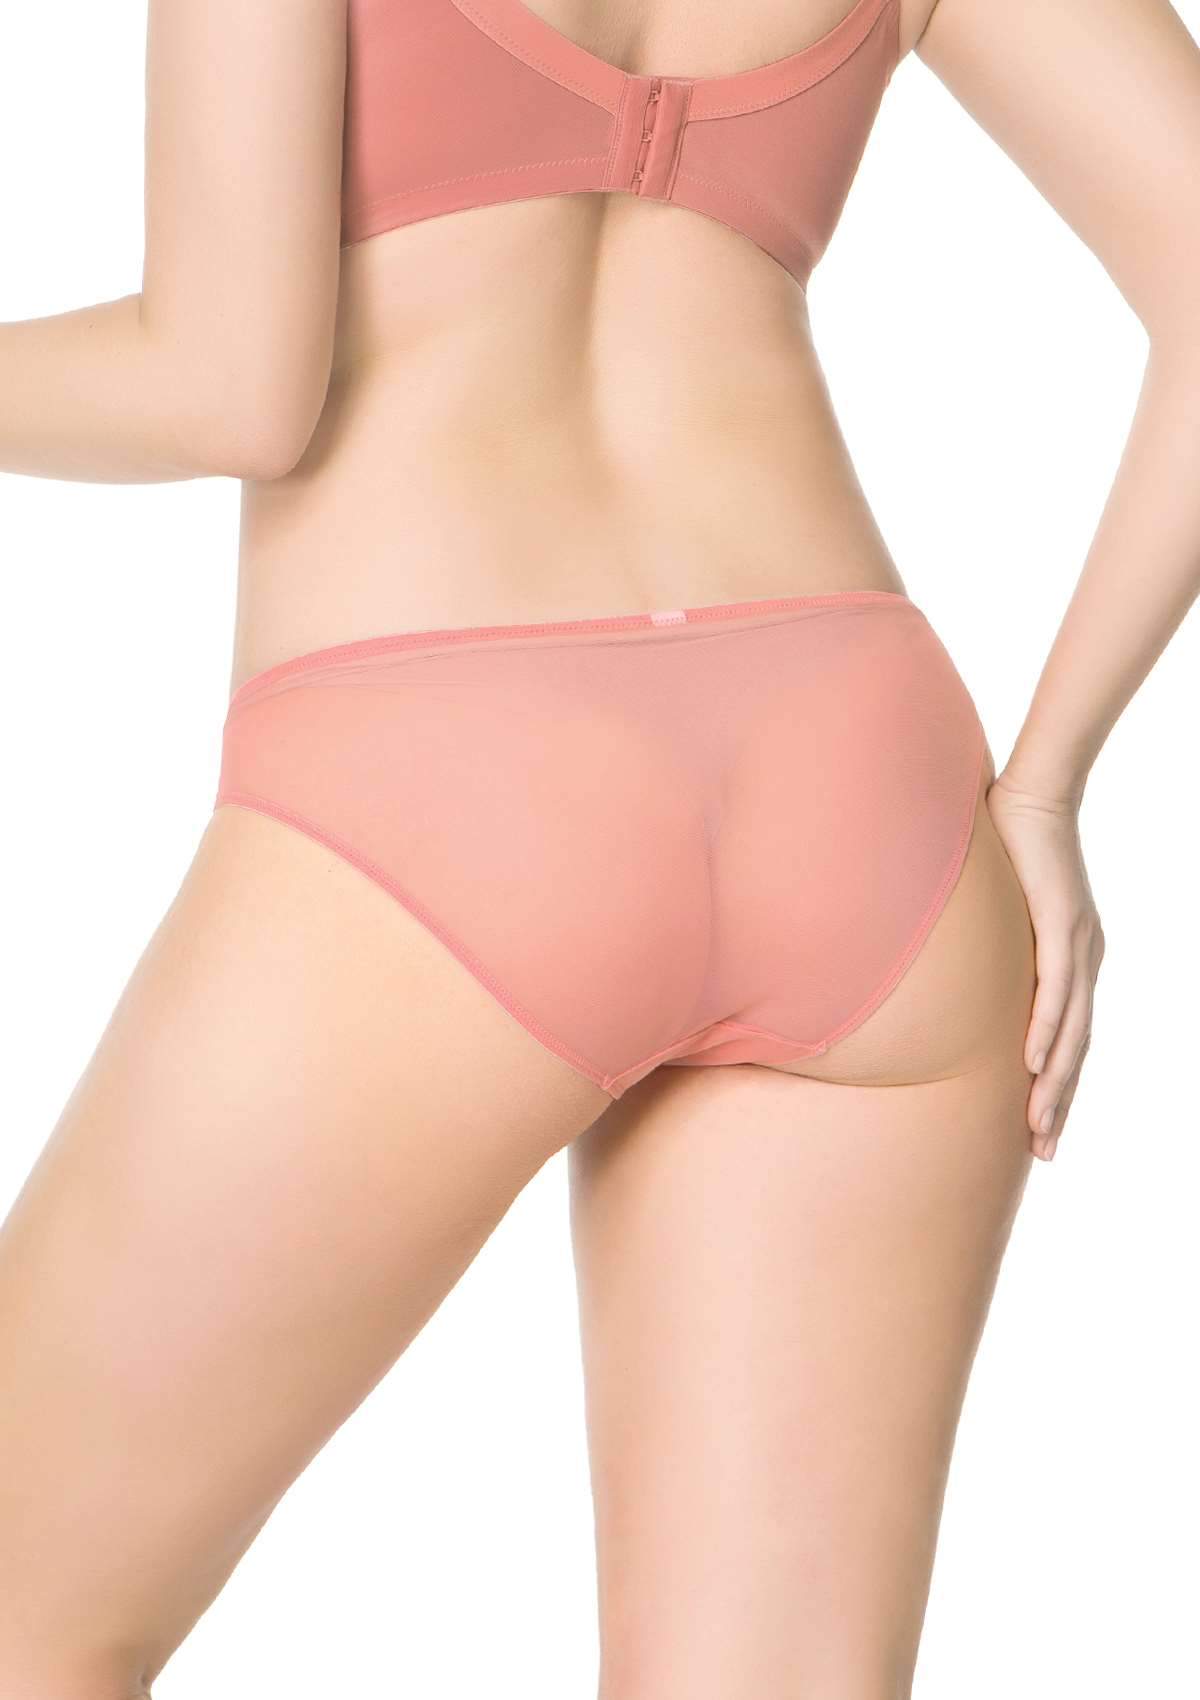 HSIA Plaid Lace Bikini Panties 3 Pack - M / Black+Yellow+Pink